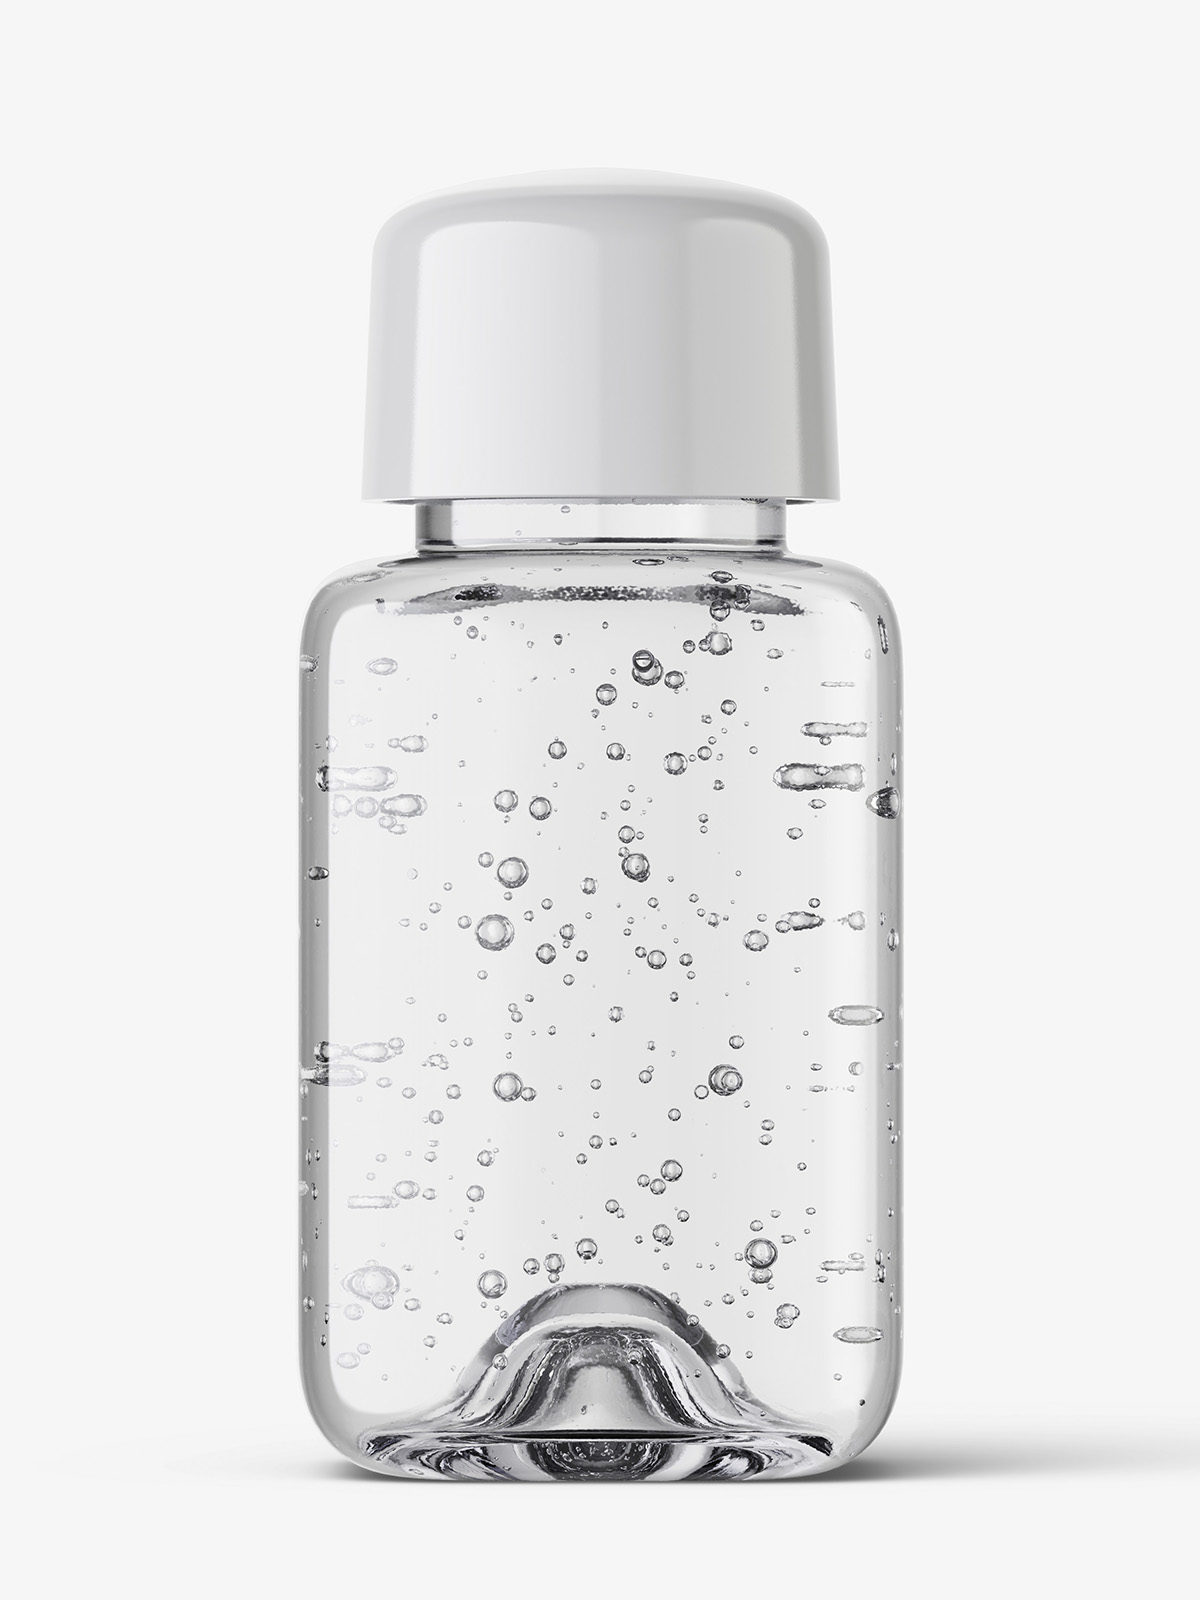 Download Square bottle with transparent gel mockup - Smarty Mockups